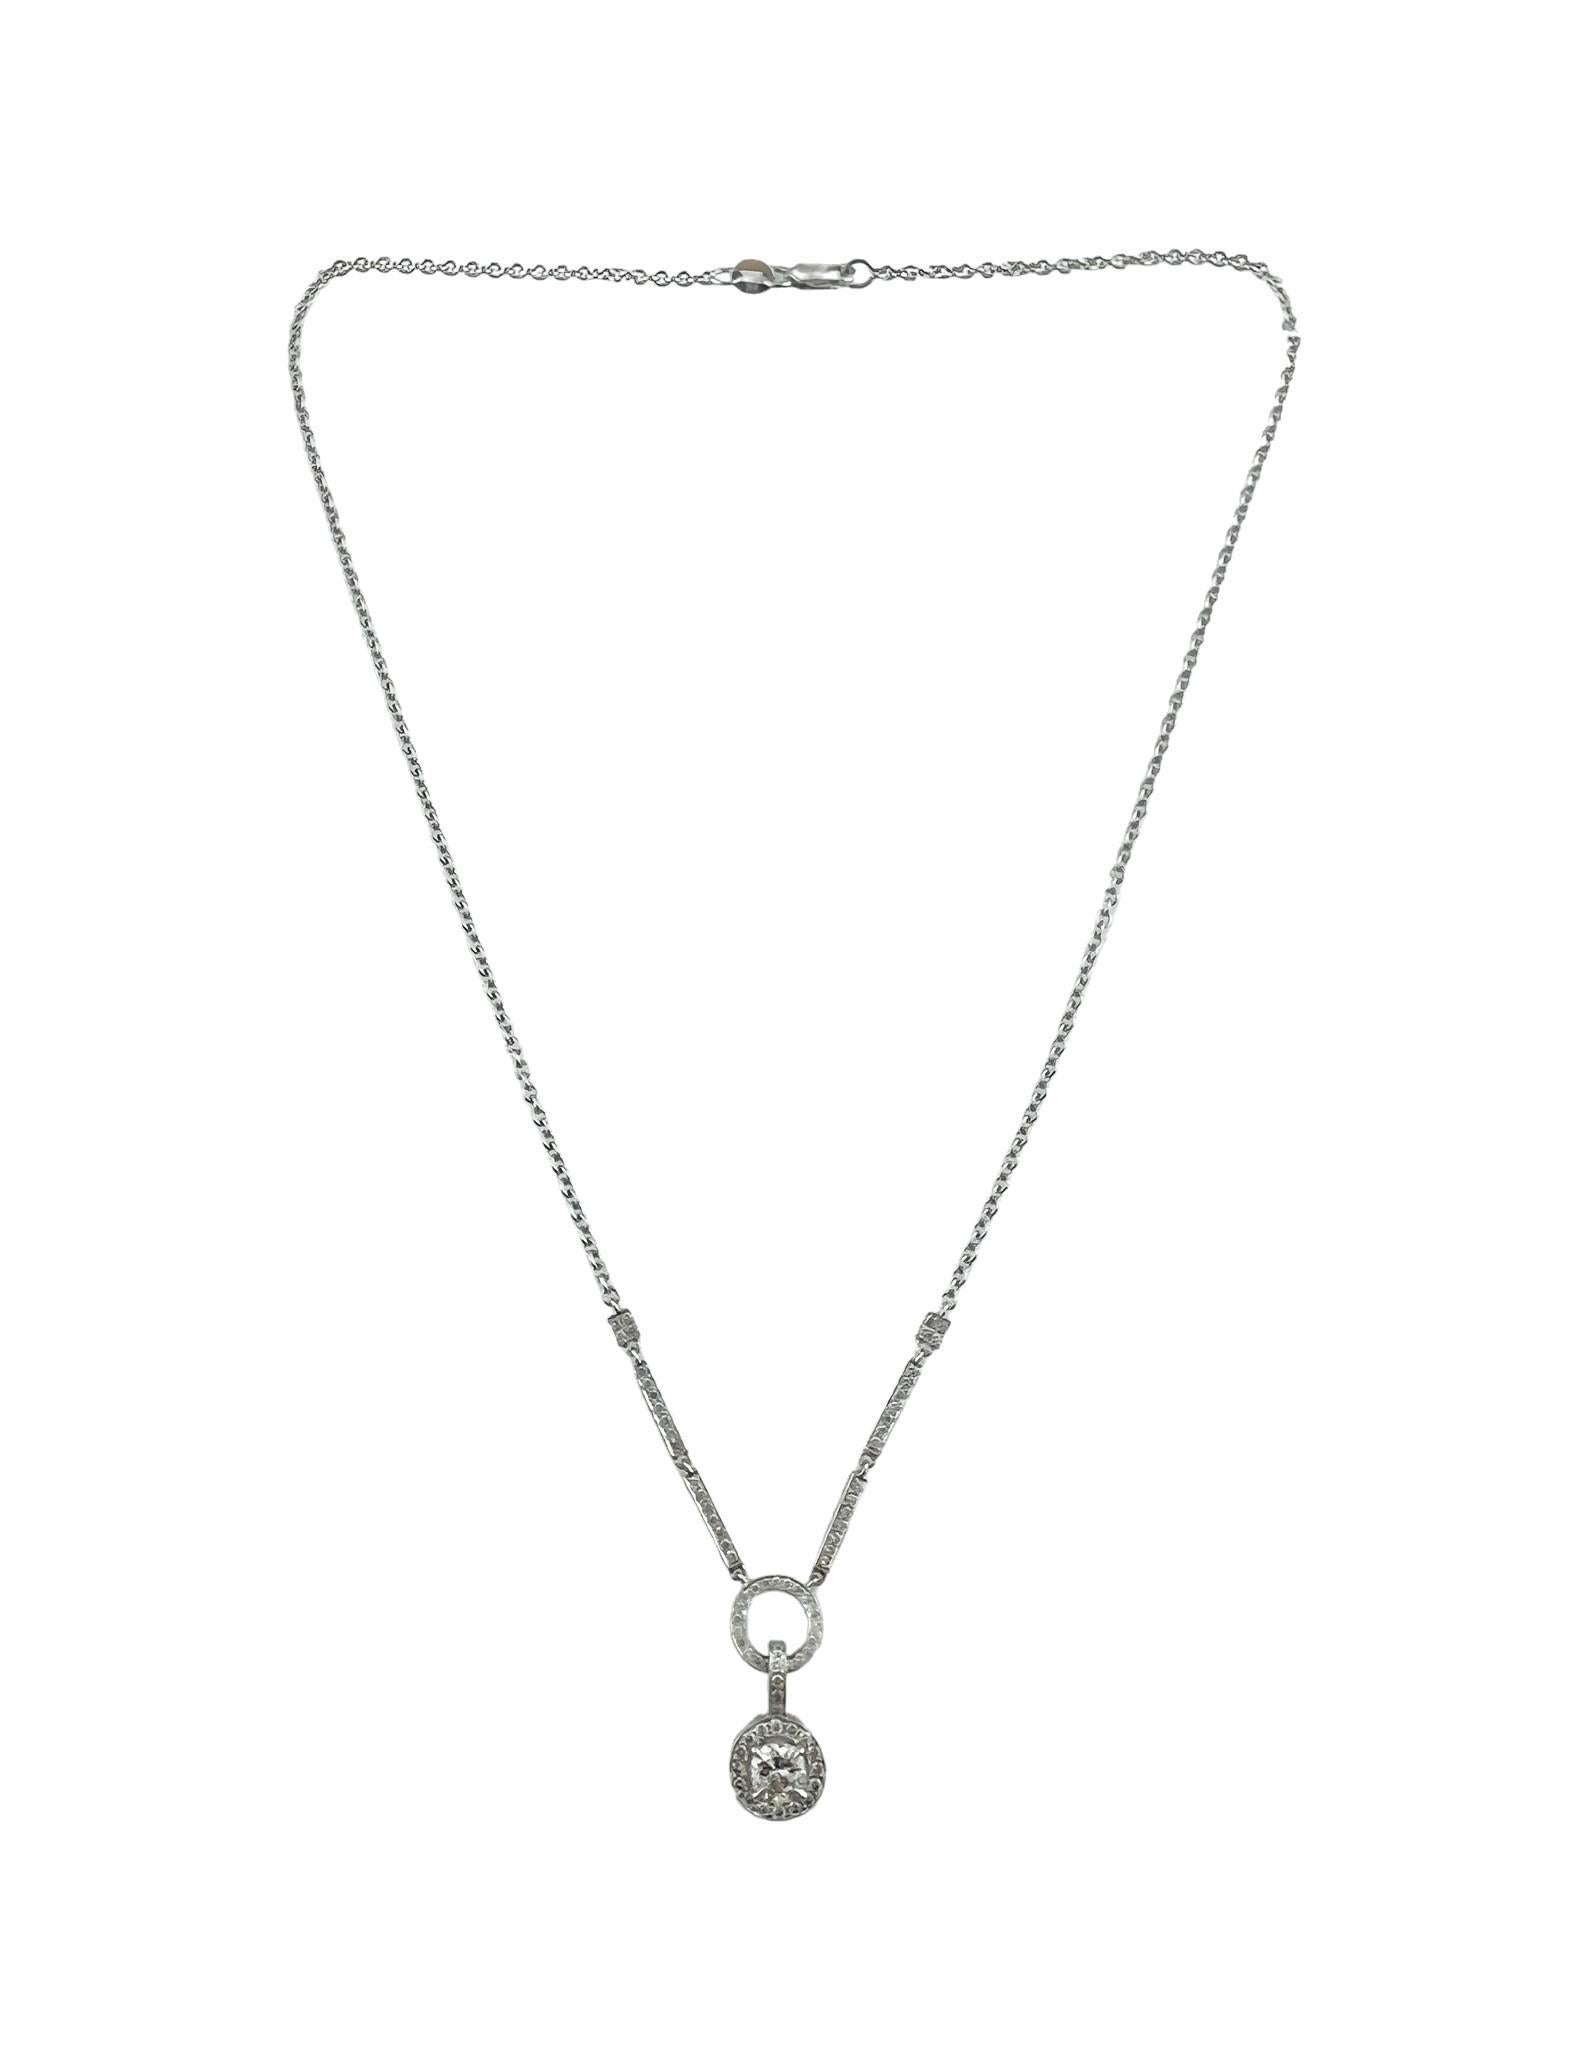 Brilliant Cut 14 Karat White Gold Diamond Pendant Necklace #16749 For Sale